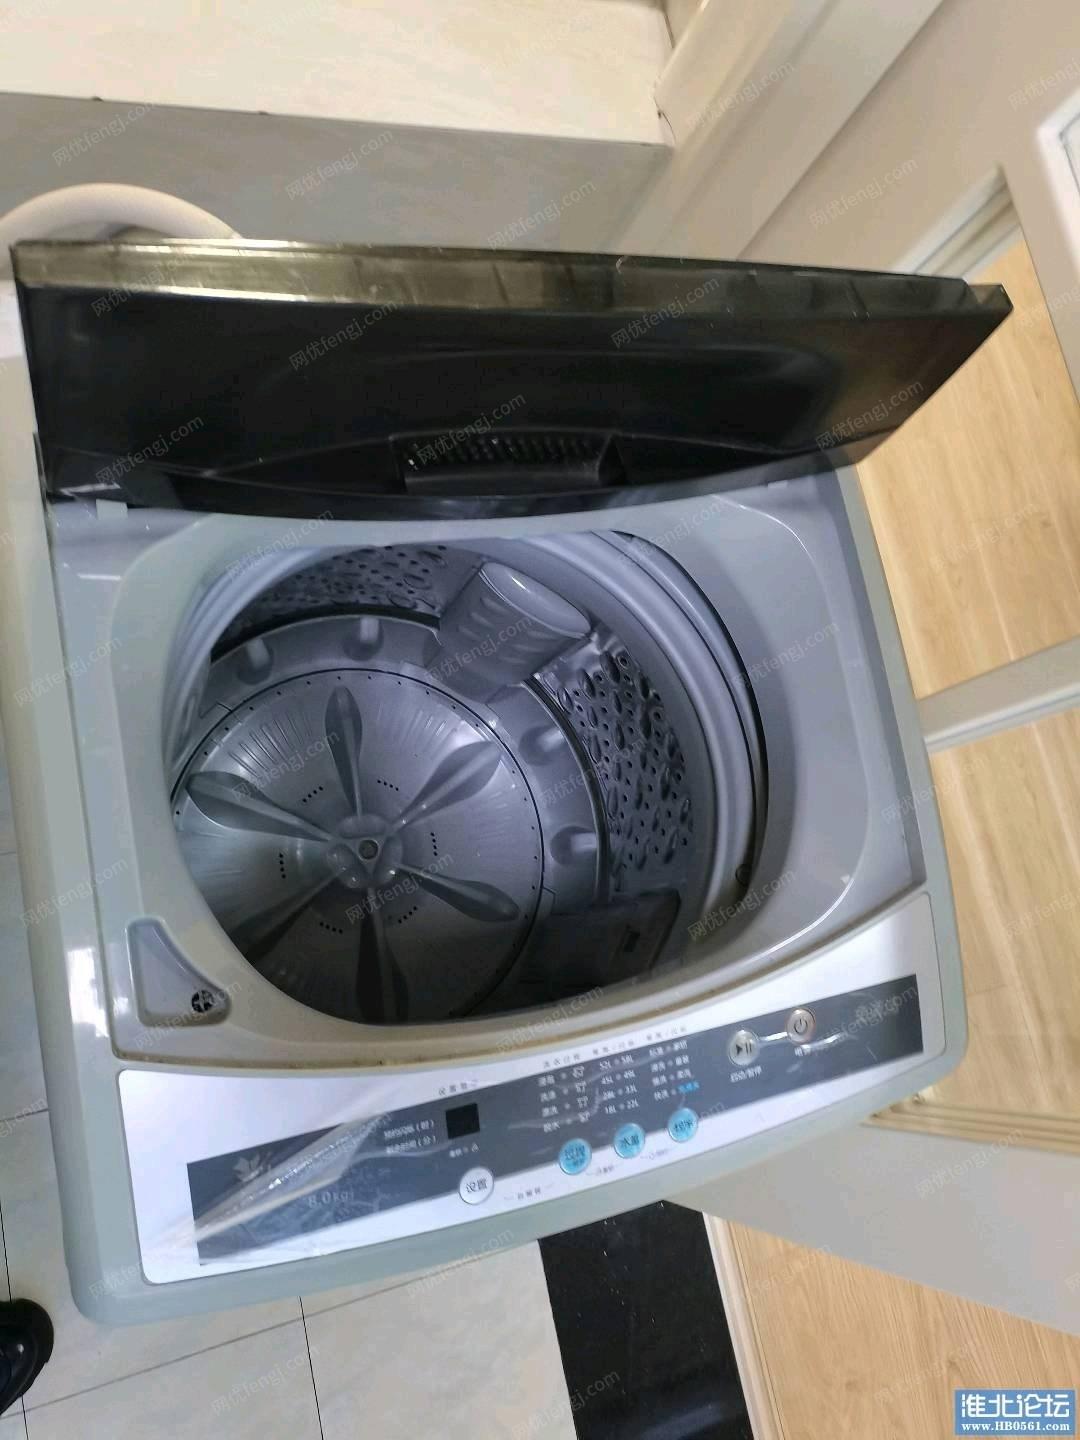 安徽淮北9成新二手洗衣机低价出售